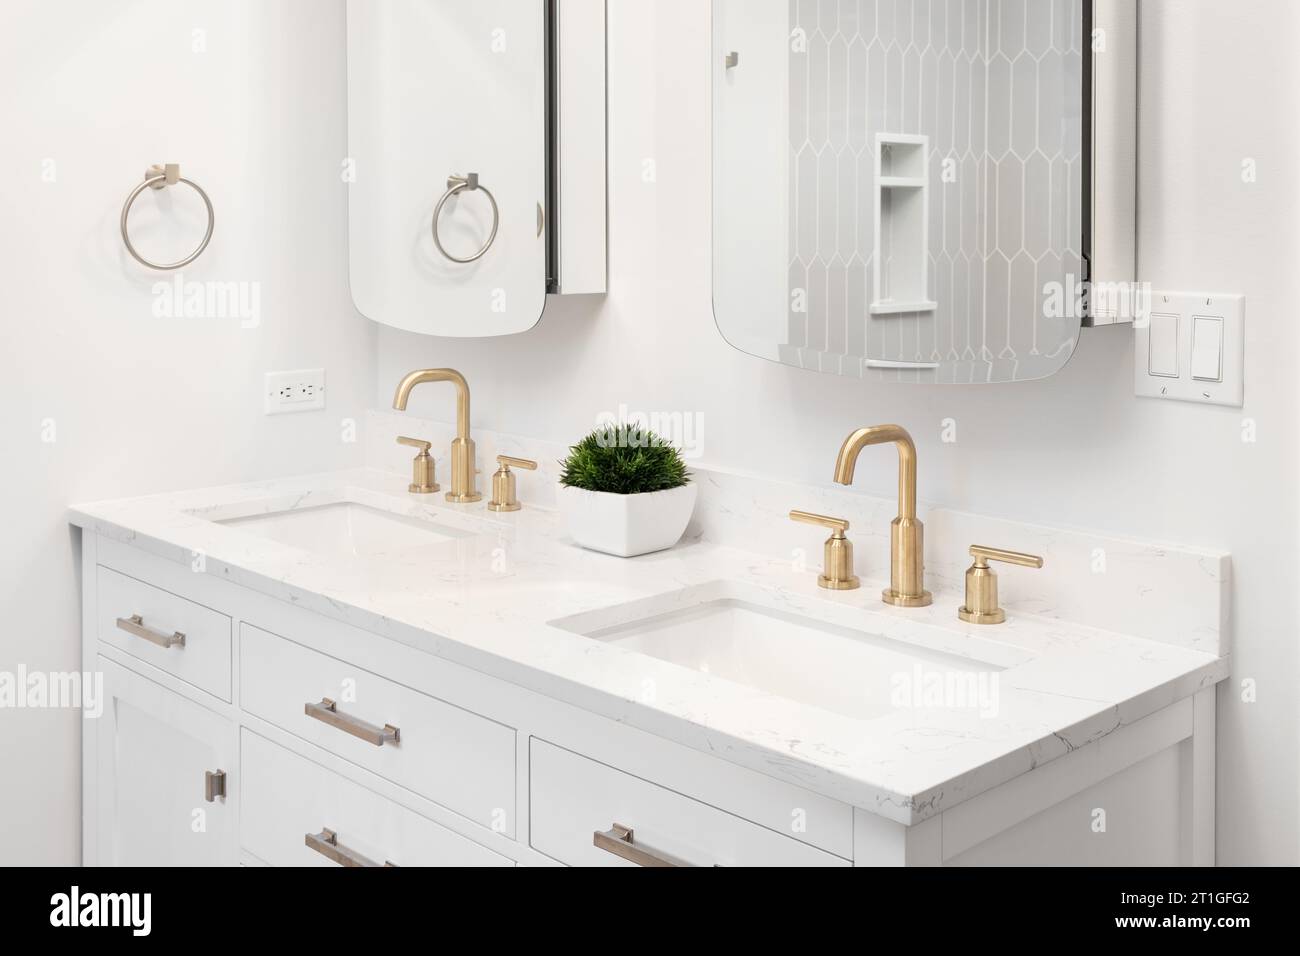 Une salle de bains avec robinets en or, meuble de toilette blanc, une plante assise sur un comptoir en marbre blanc, et un reflet d'une douche de carrelage de piquet. Banque D'Images